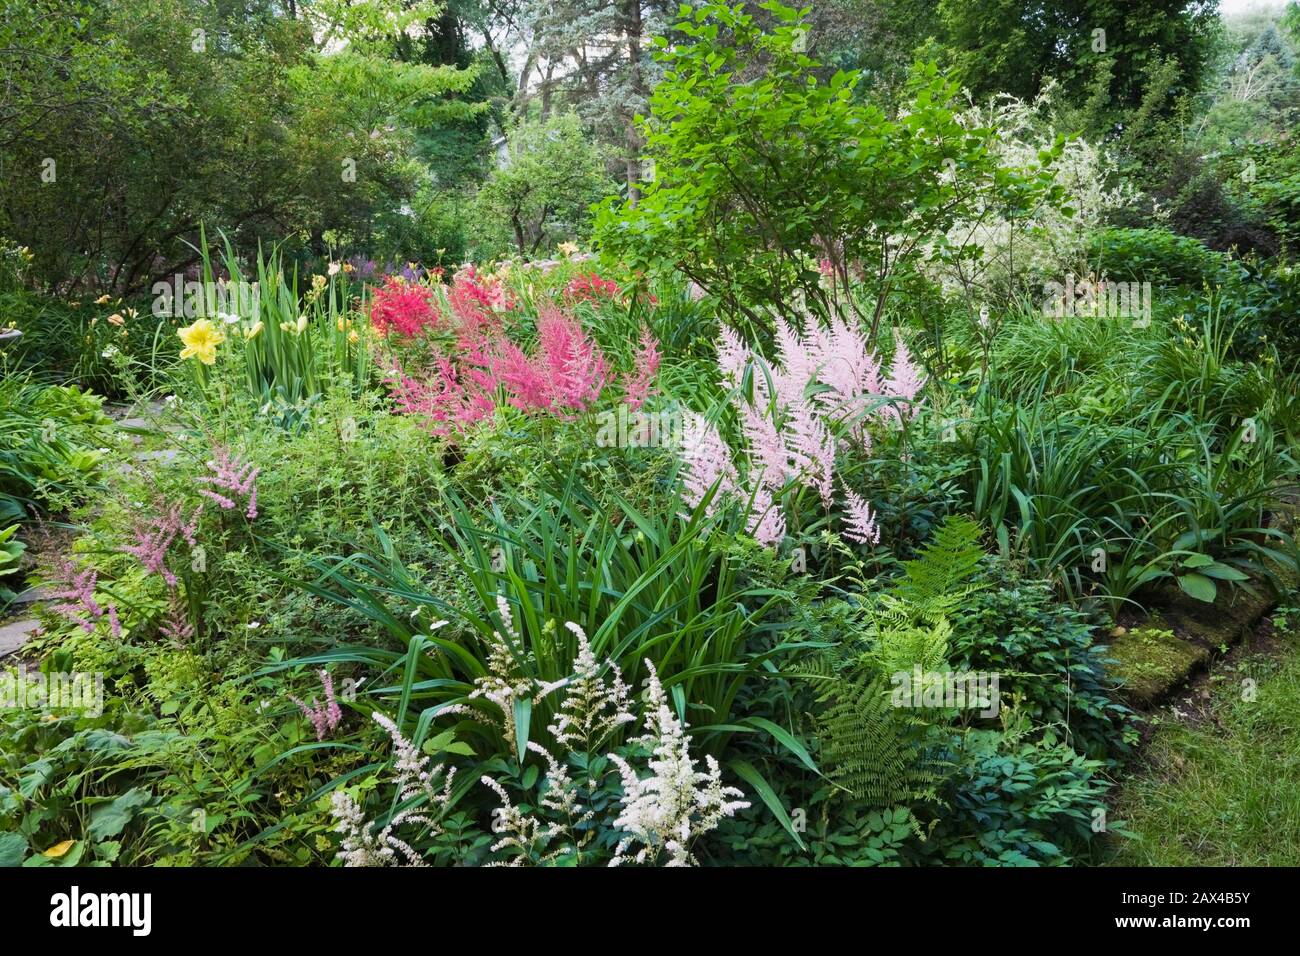 Confine con Astilbes bianco, rosa e malva, Hemerocallis giallo - fiori di giorno in giardino privato cortile in estate Foto Stock